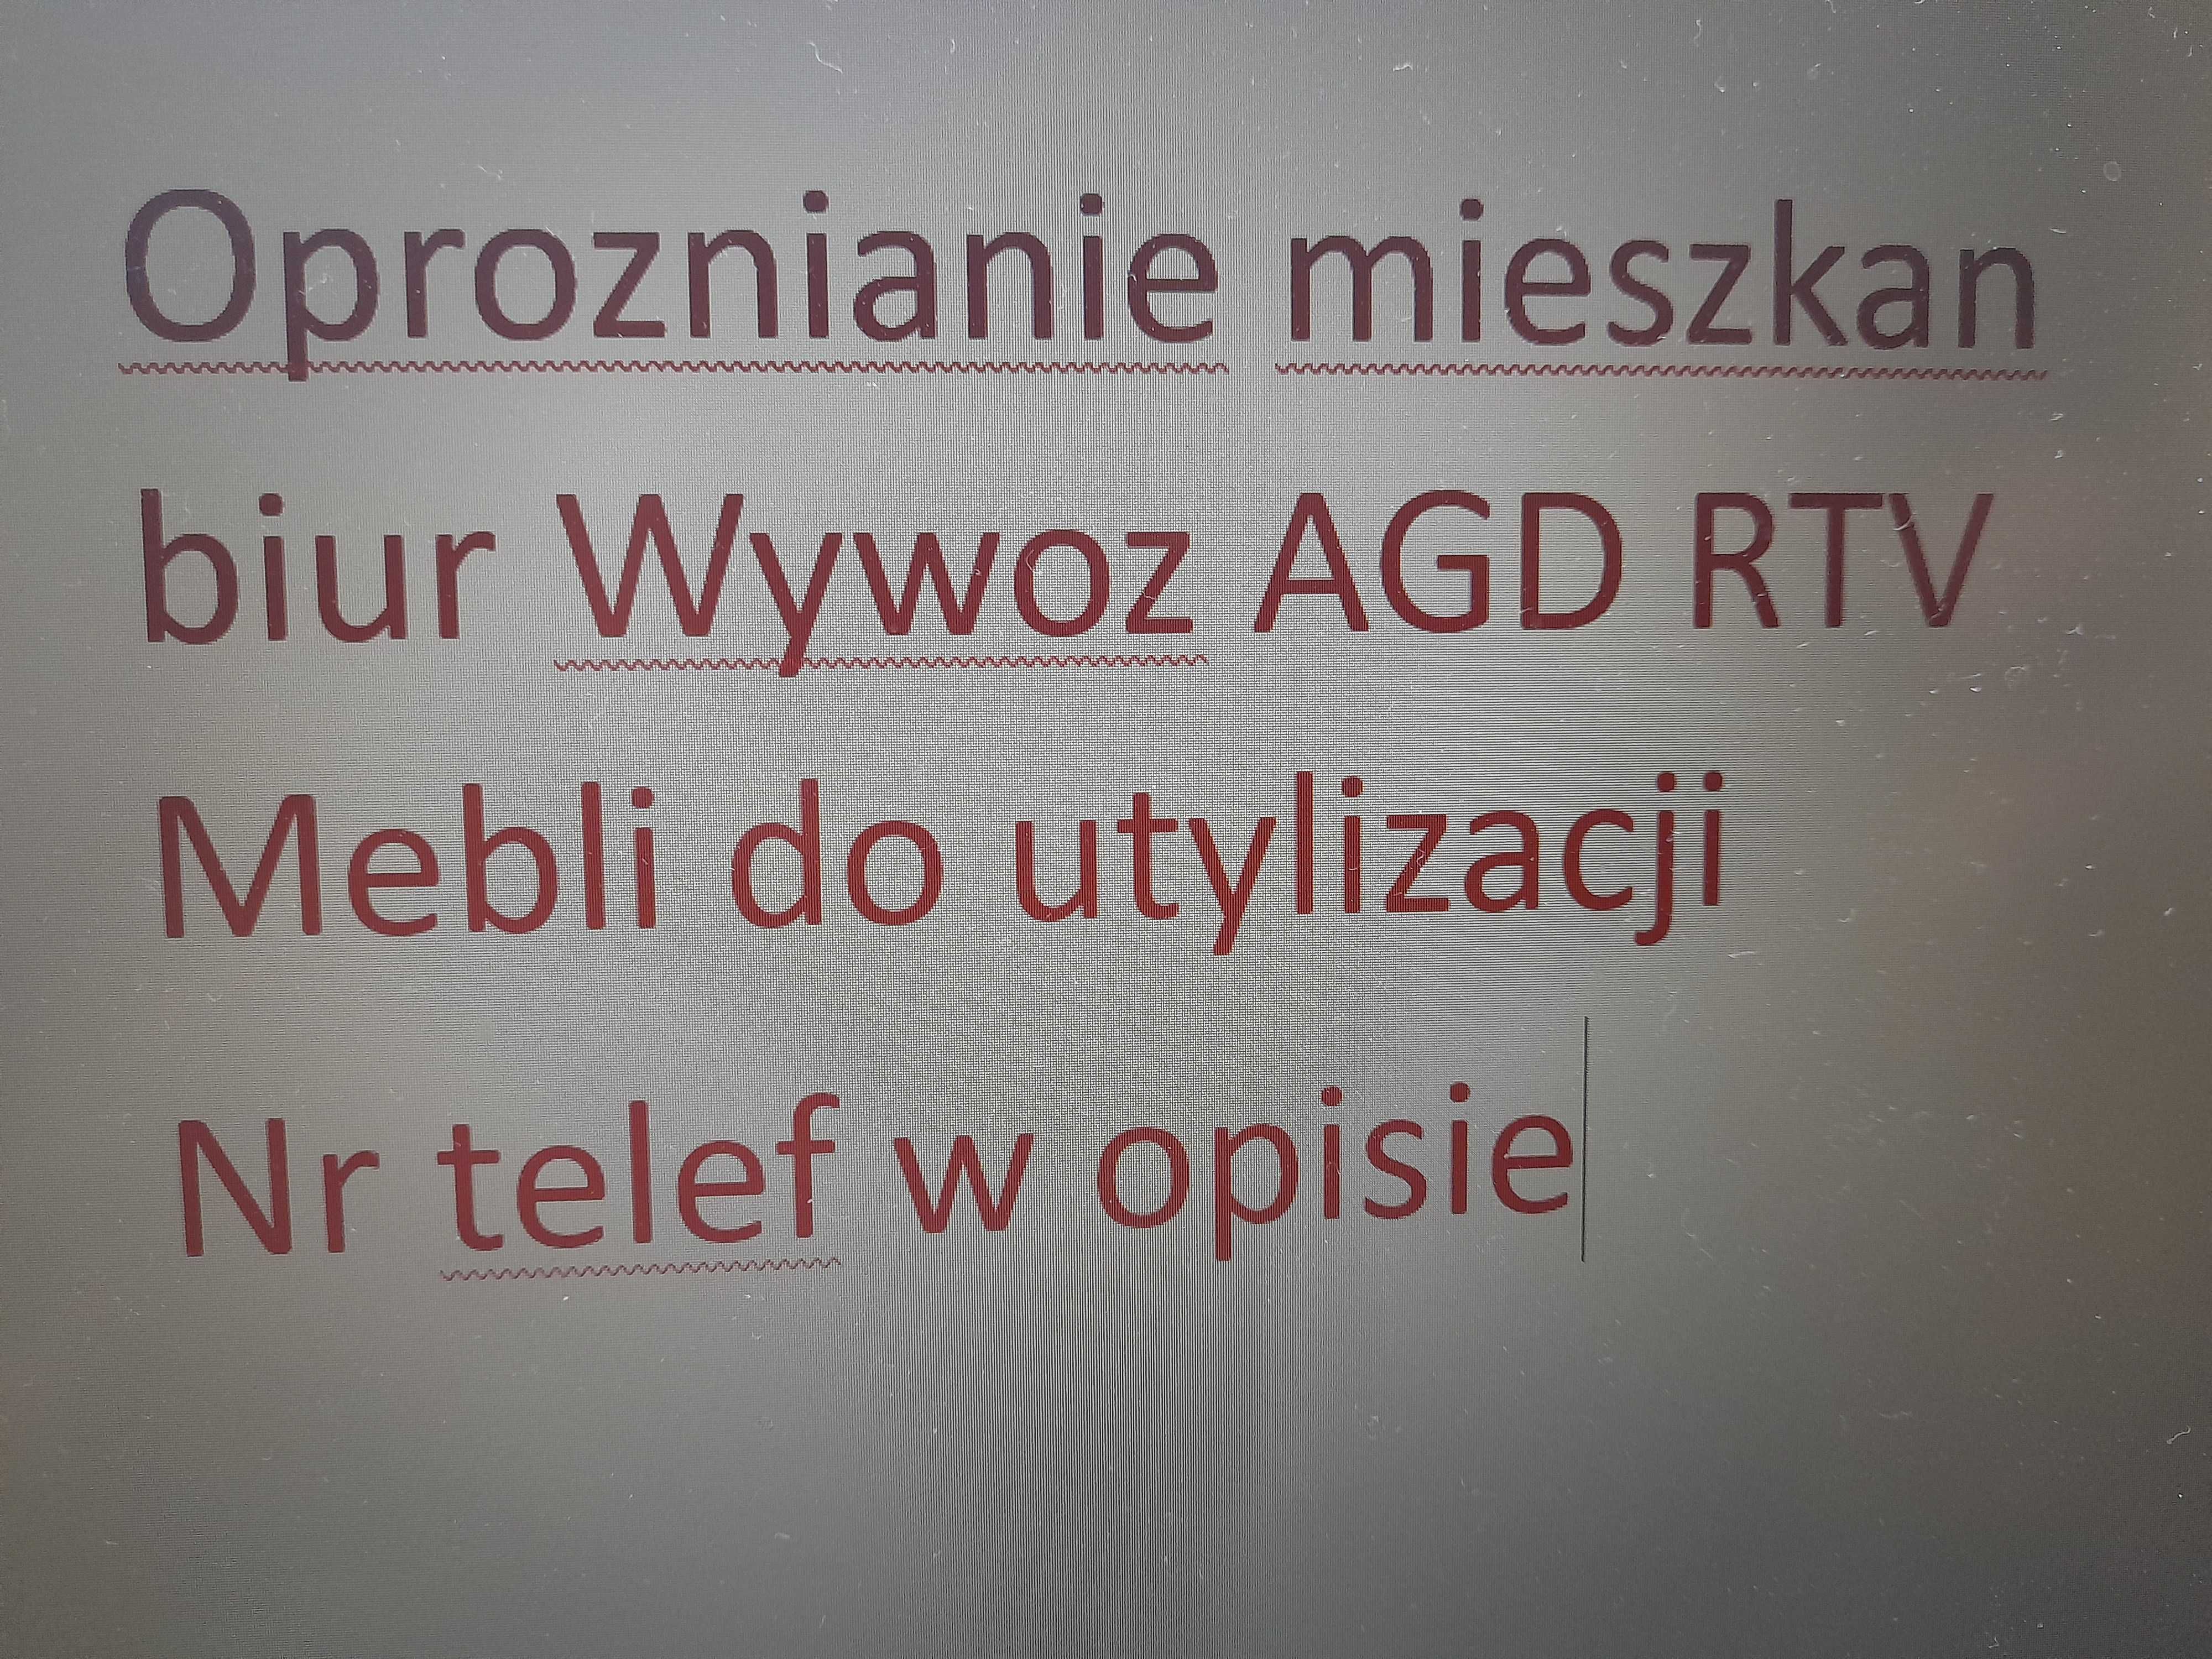 Oproznianie mieszkan biur Wywoz AGD RTV Mebli do utylizacji Tarnowski